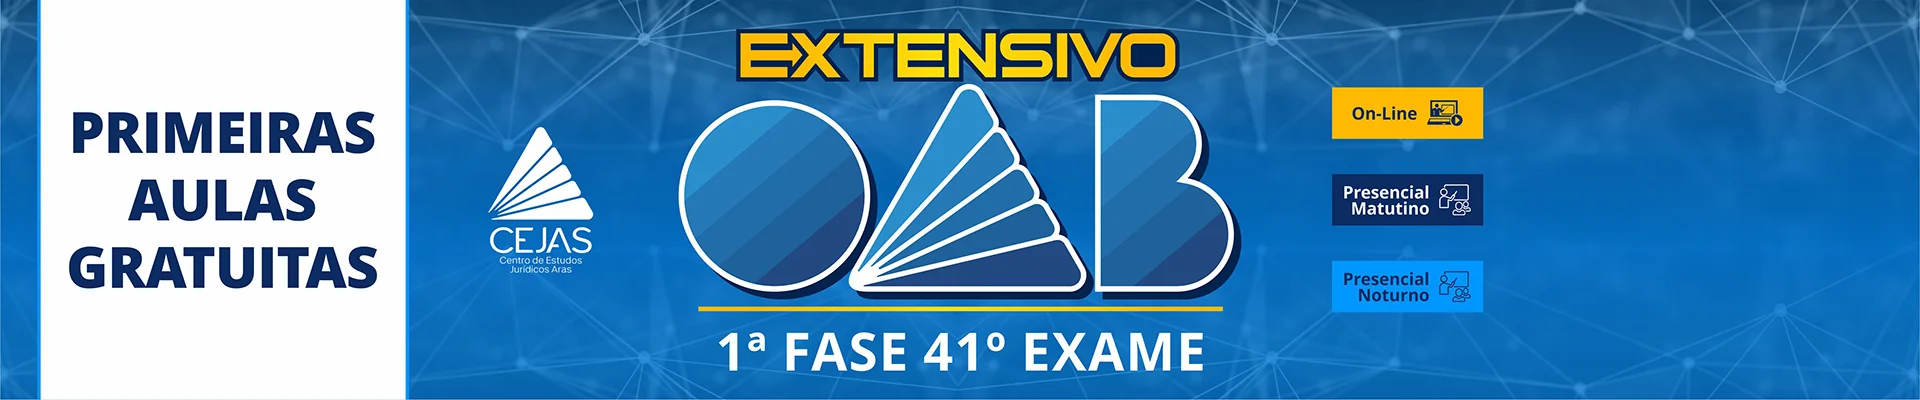 Primeiras Aulas Gratuitas - Extensivo OAB 1ª Fase - 41° Exame